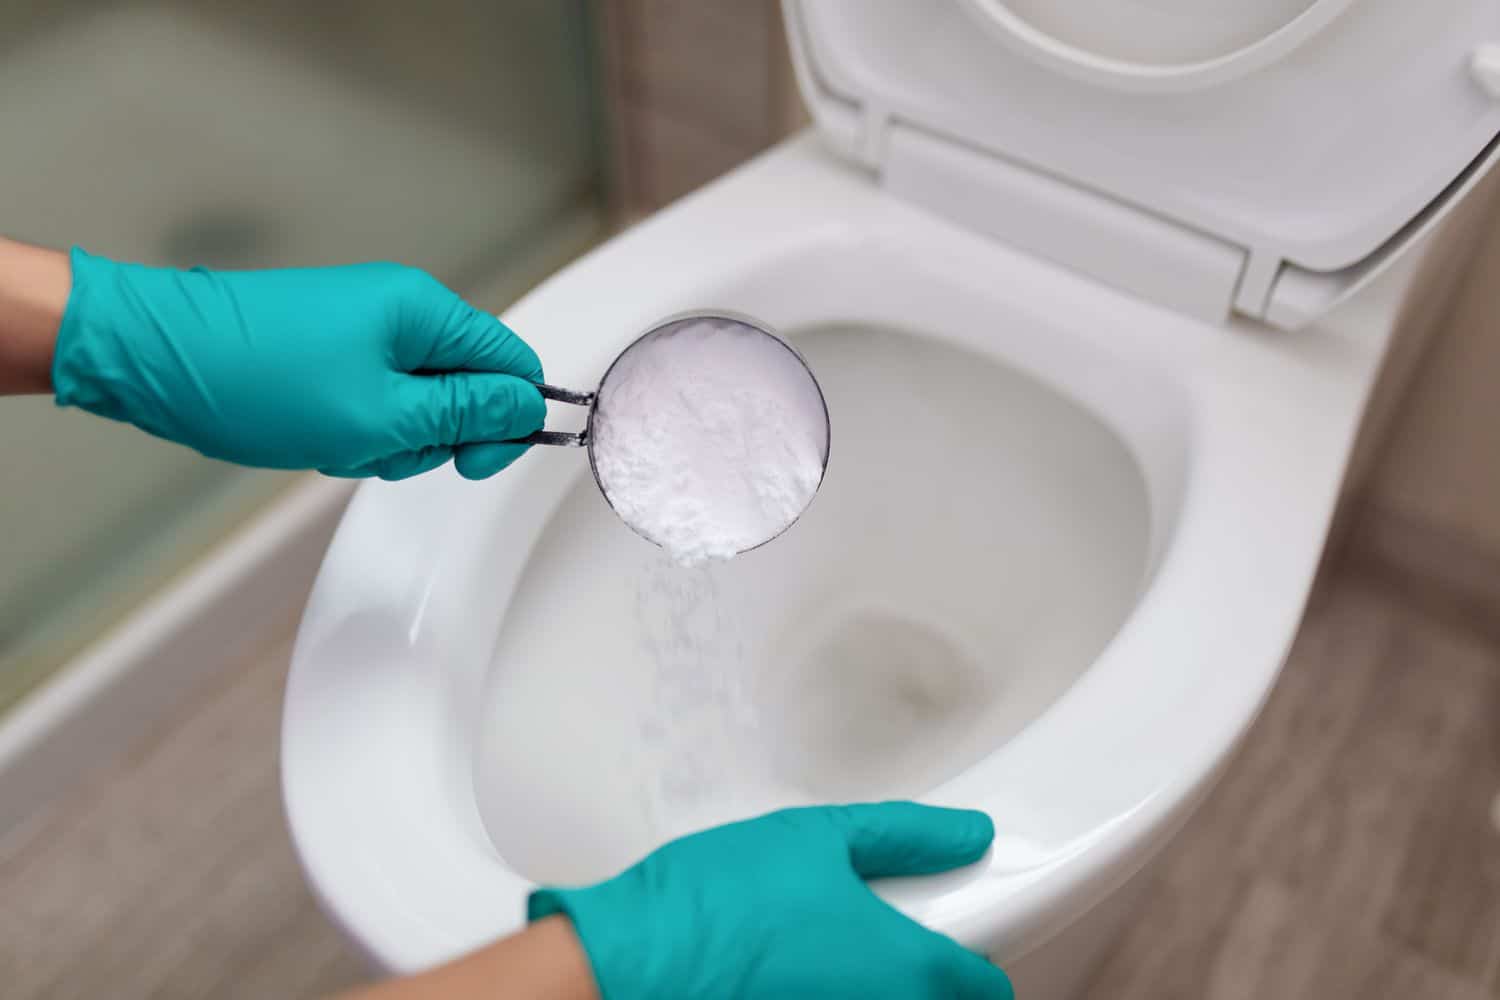 bicarbonate soude pour déboucher wc